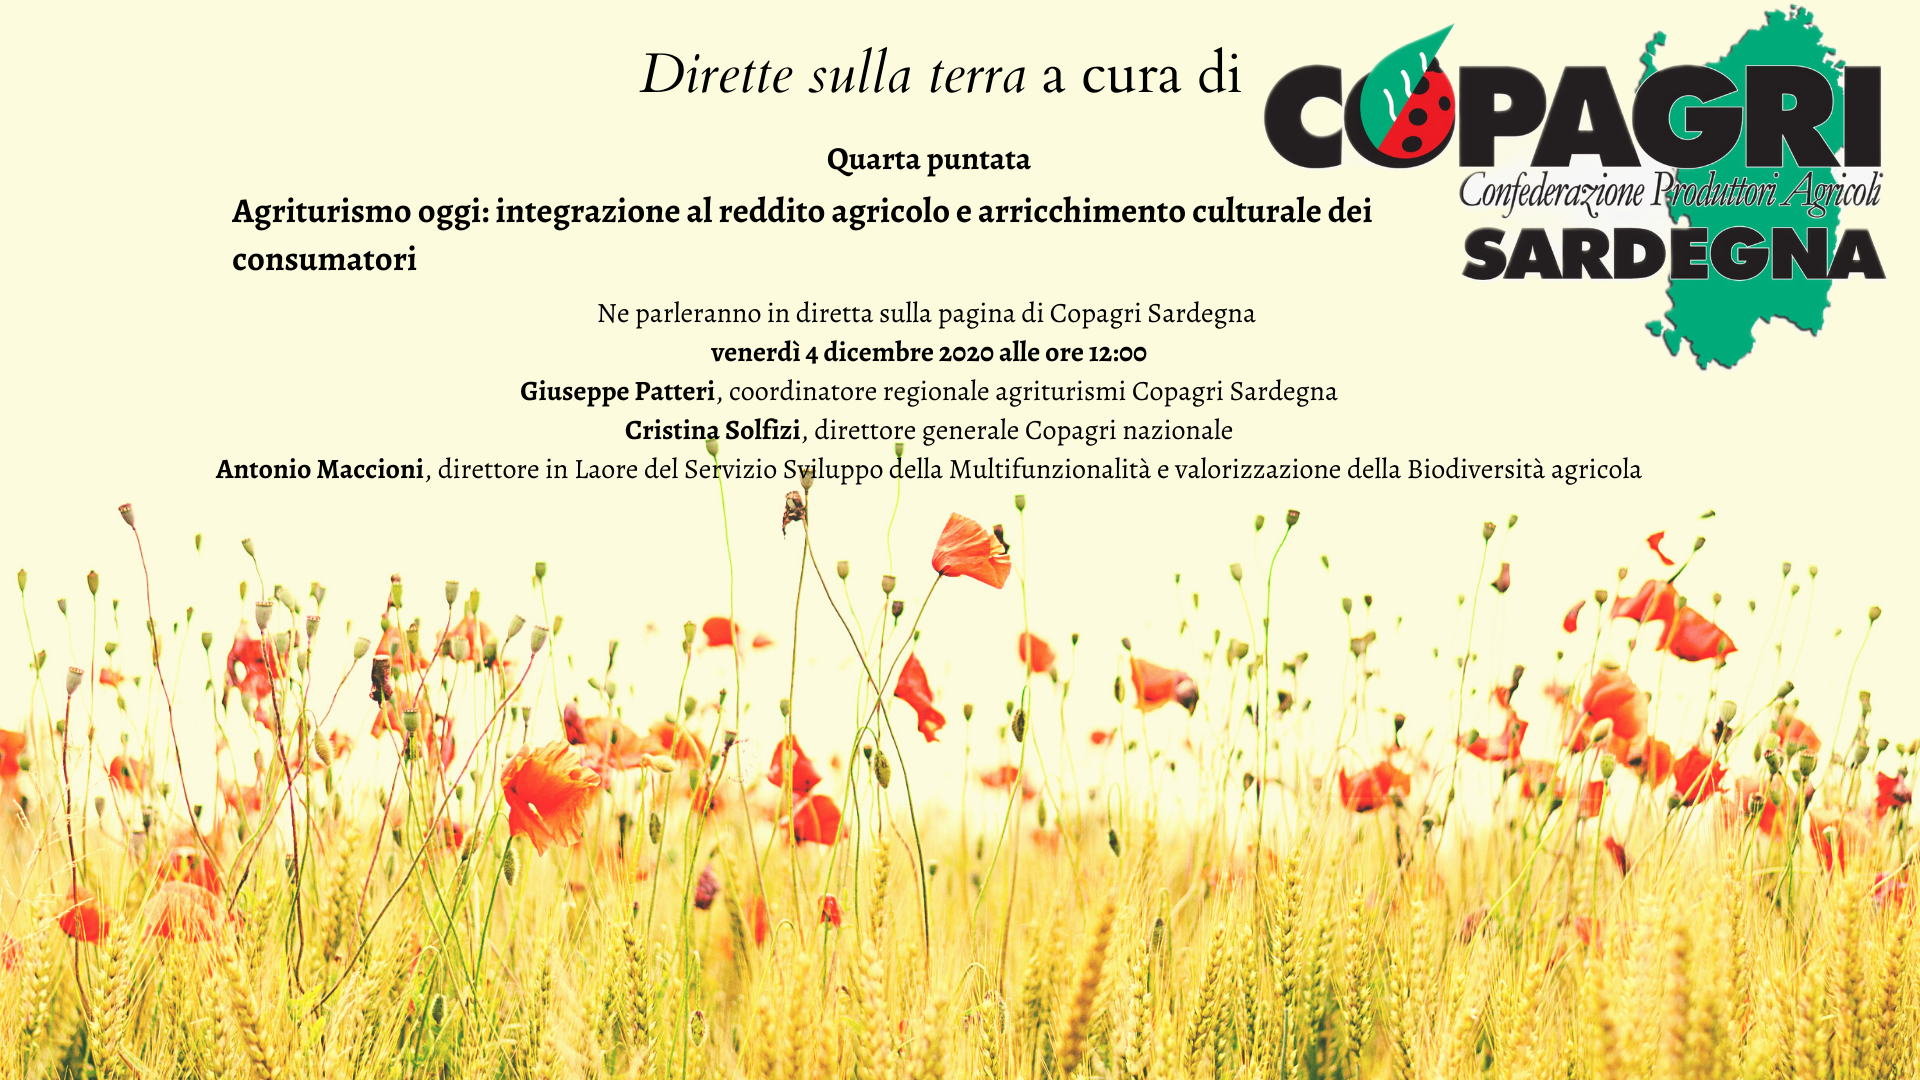 Venerdì 4 dicembre sulla pagina di Copagri Sardegna “Agriturismo oggi: integrazione al reddito agricolo e arricchimento culturale dei consumatori”